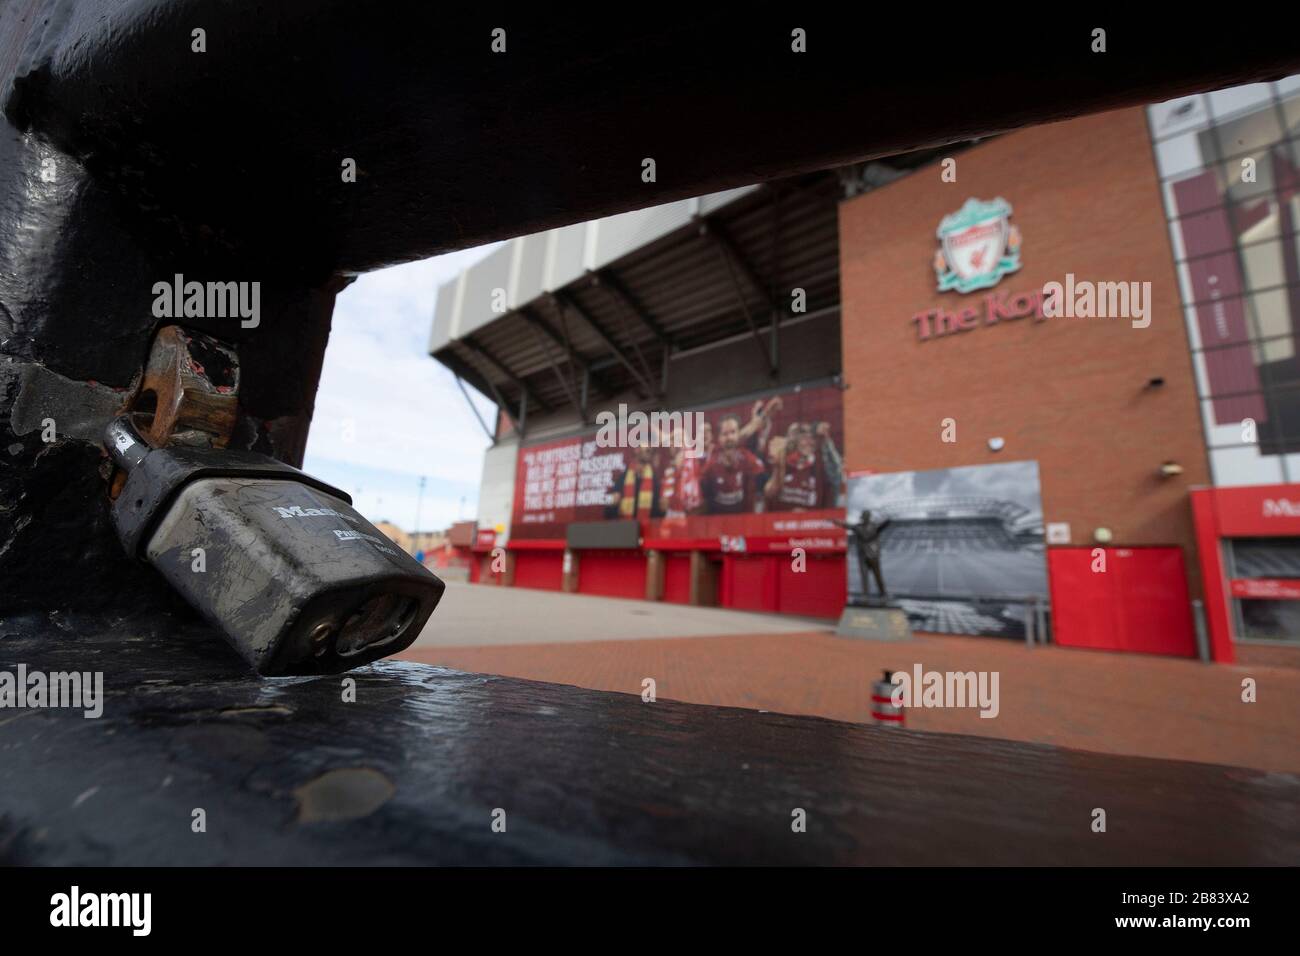 Ein allgemeiner Blick auf die verschlossenen Tore außerhalb von Anfield, dem Heimstadion des Liverpool Football Club, nachdem bekannt gegeben wurde, dass der professionelle Fußball in England sein wird Stockfoto